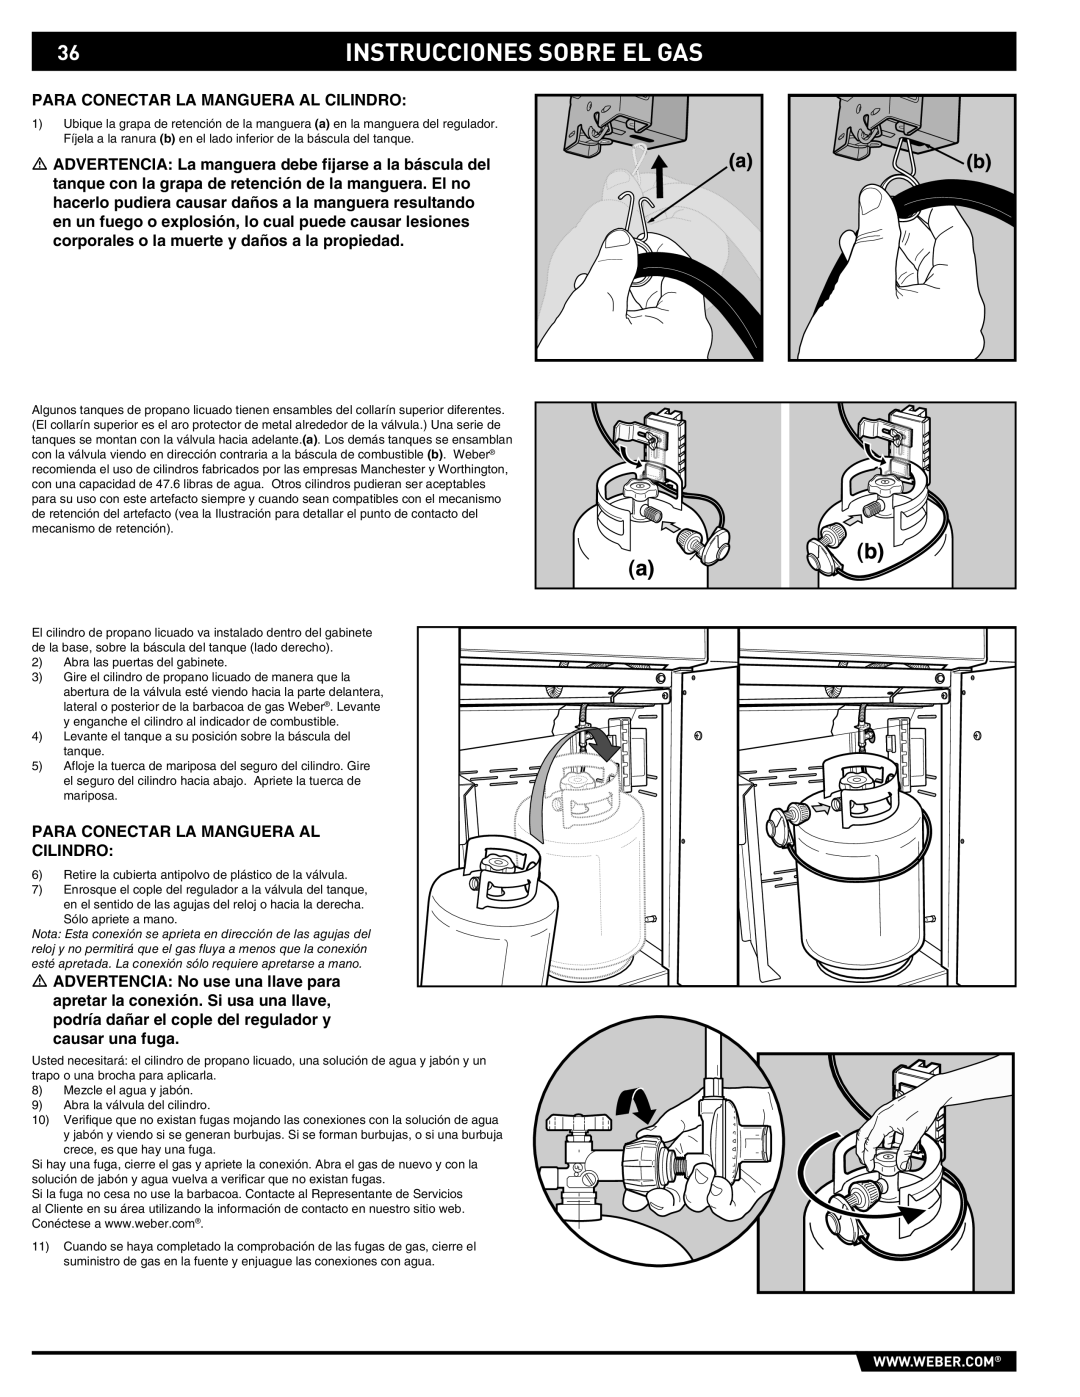 Summit 89190 manual Instrucciones Sobre El Gas 